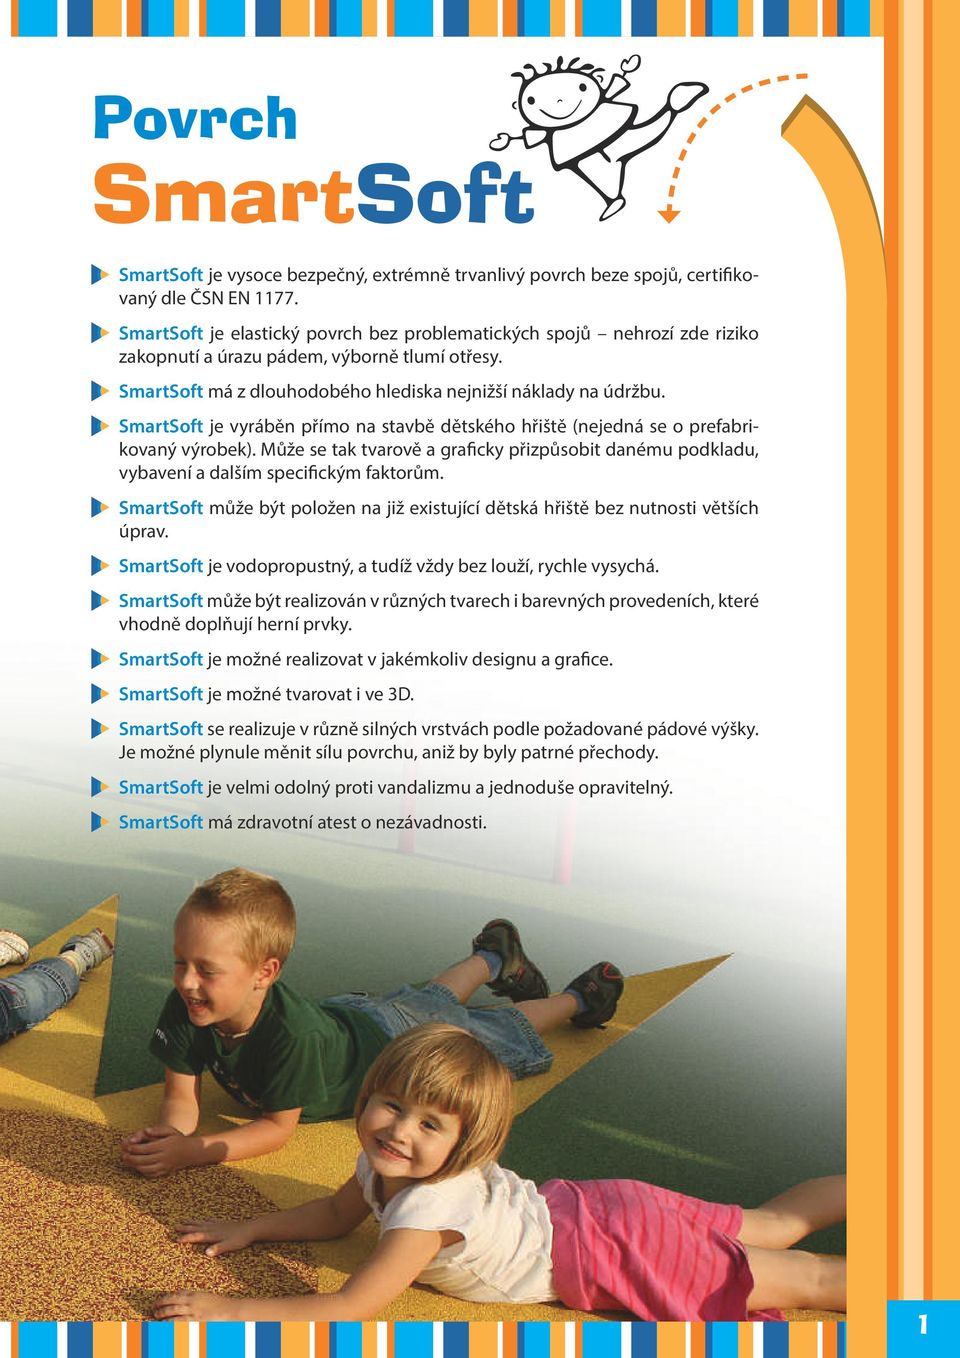 SmartSoft je vyráběn přímo na stavbě dětského hřiště (nejedná se o prefabrikovaný výrobek). Může se tak tvarově a graicky přizpůsobit danému podkladu, vybavení a dalším speciickým faktorům.